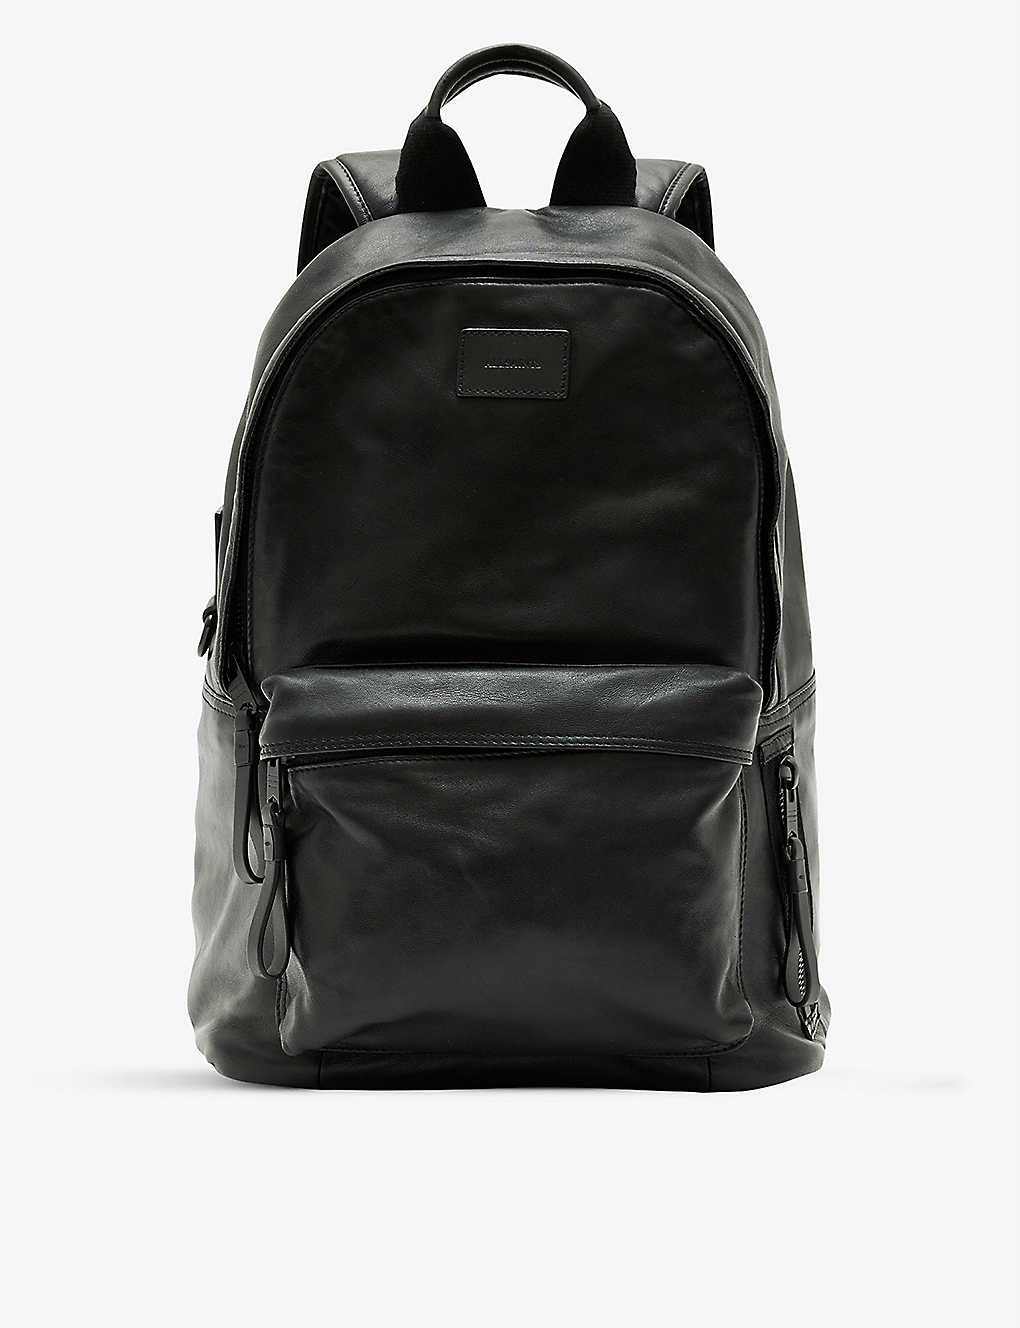 ALLSAINTS - Carabiner brand-patch leather backpack | Selfridges.com